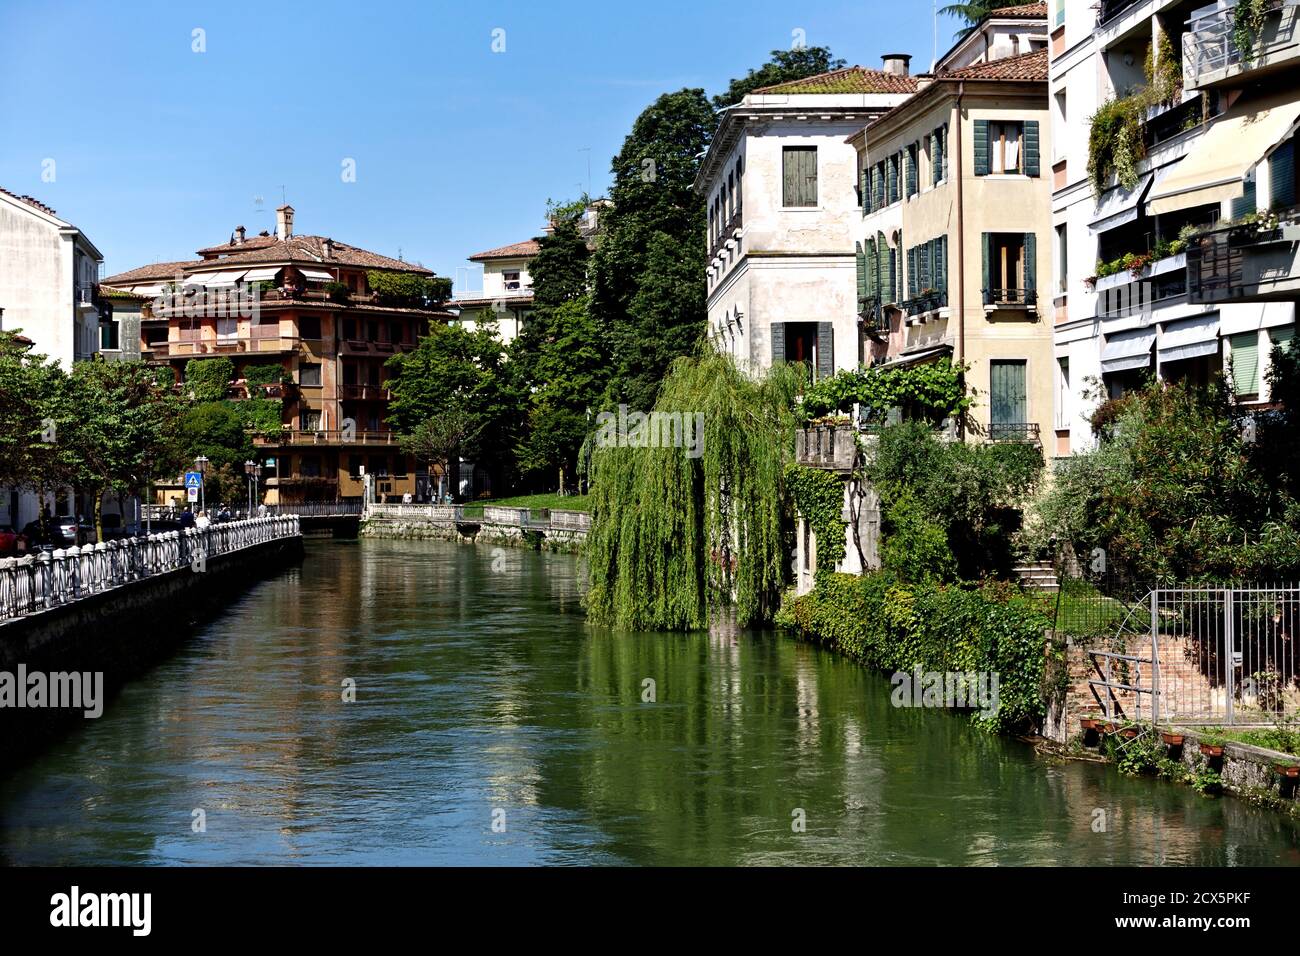 Vistazo de edificios típicos venecianos a lo largo del río Sile, Riviera Santa Margherita. Árbol de sauce llorón. Treviso, Véneto, Italia, Europa. Copie el espacio. Foto de stock